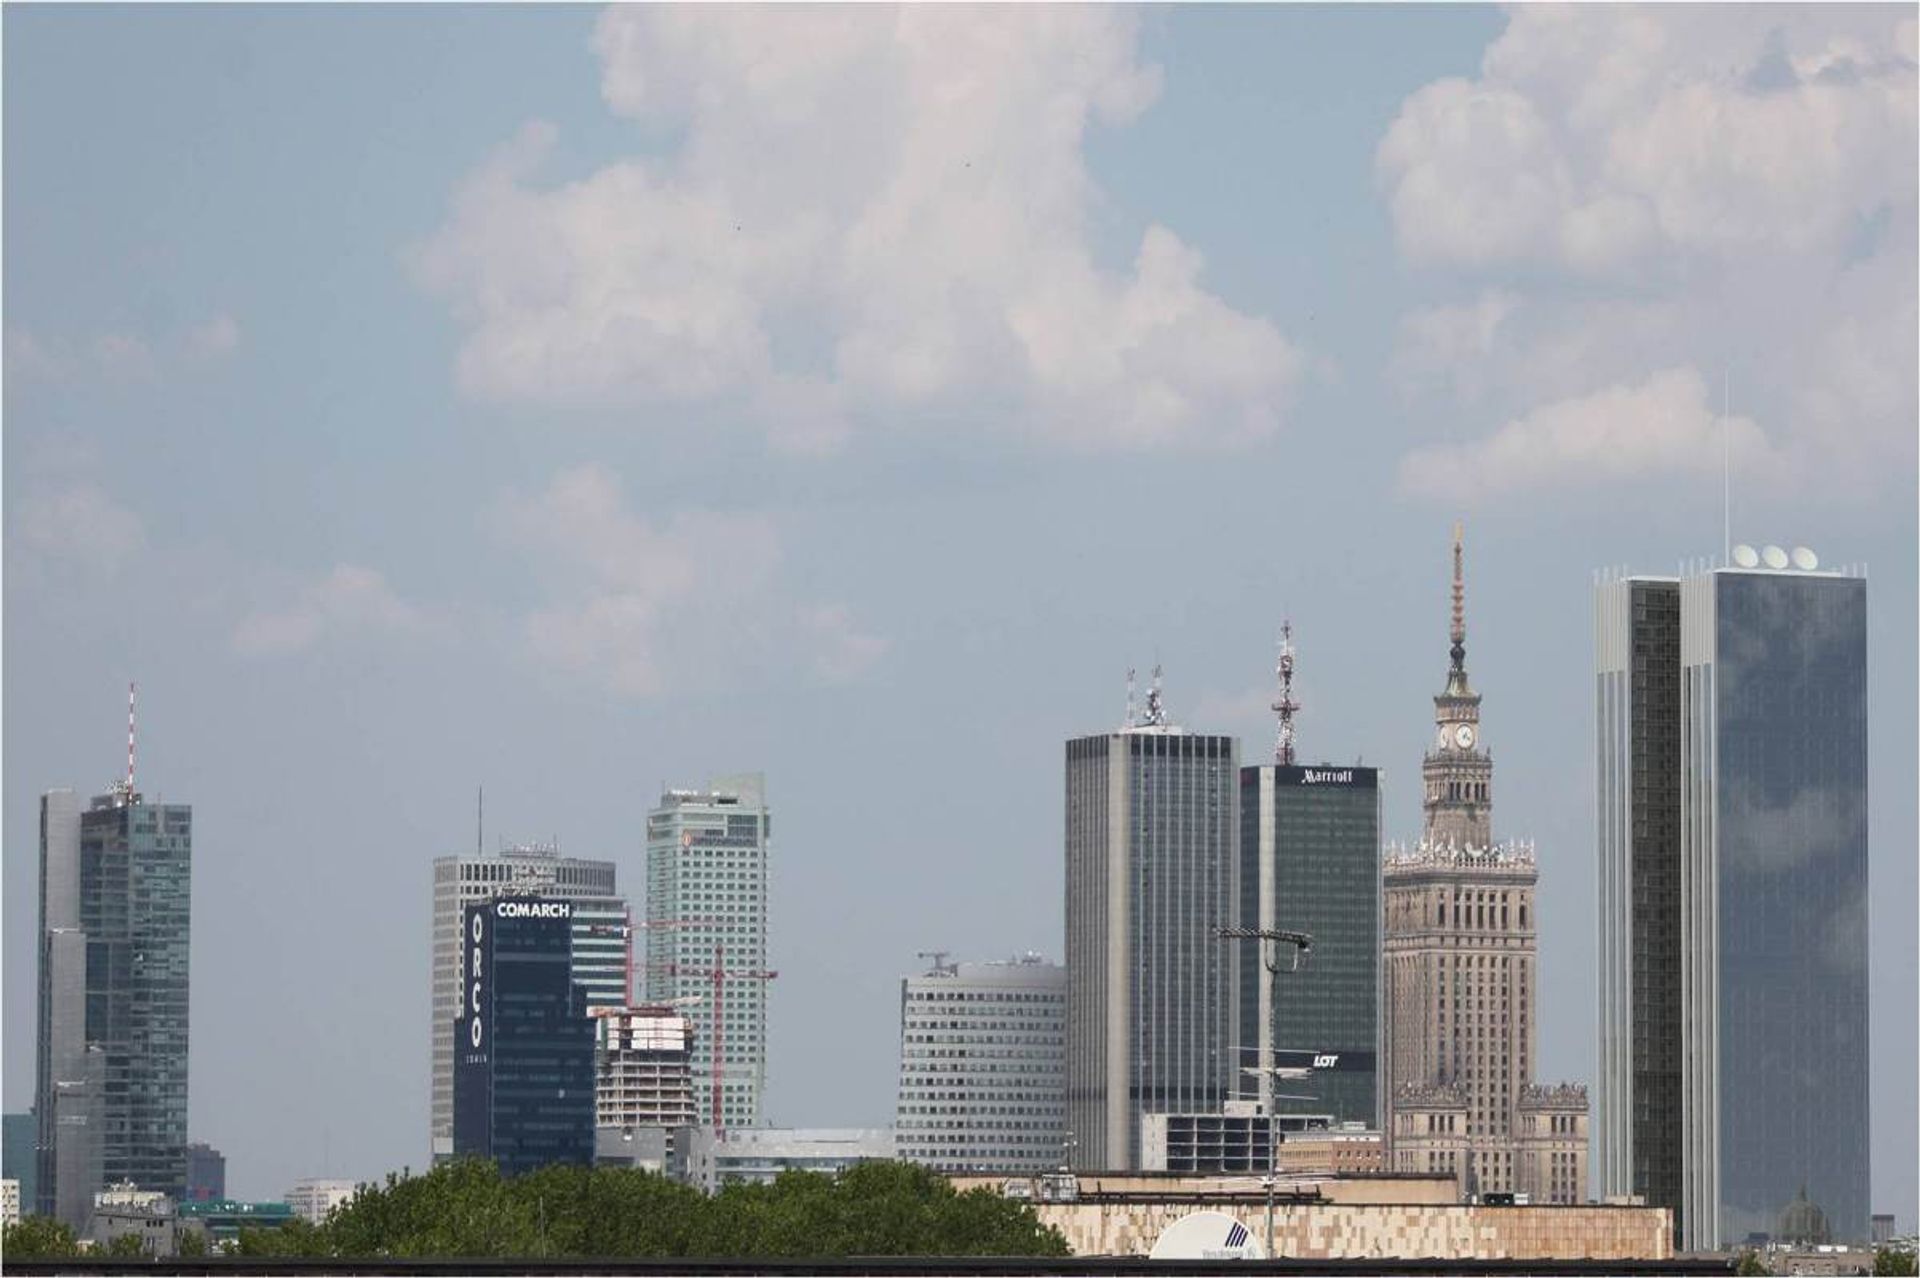  Trwa ożywienie na europejskim rynku biurowym, ale jego skala i tempo są zróżnicowane, Warszawa notuje dobre wyniki zarówno w obszarze popytu, jak i aktywności budowlanej